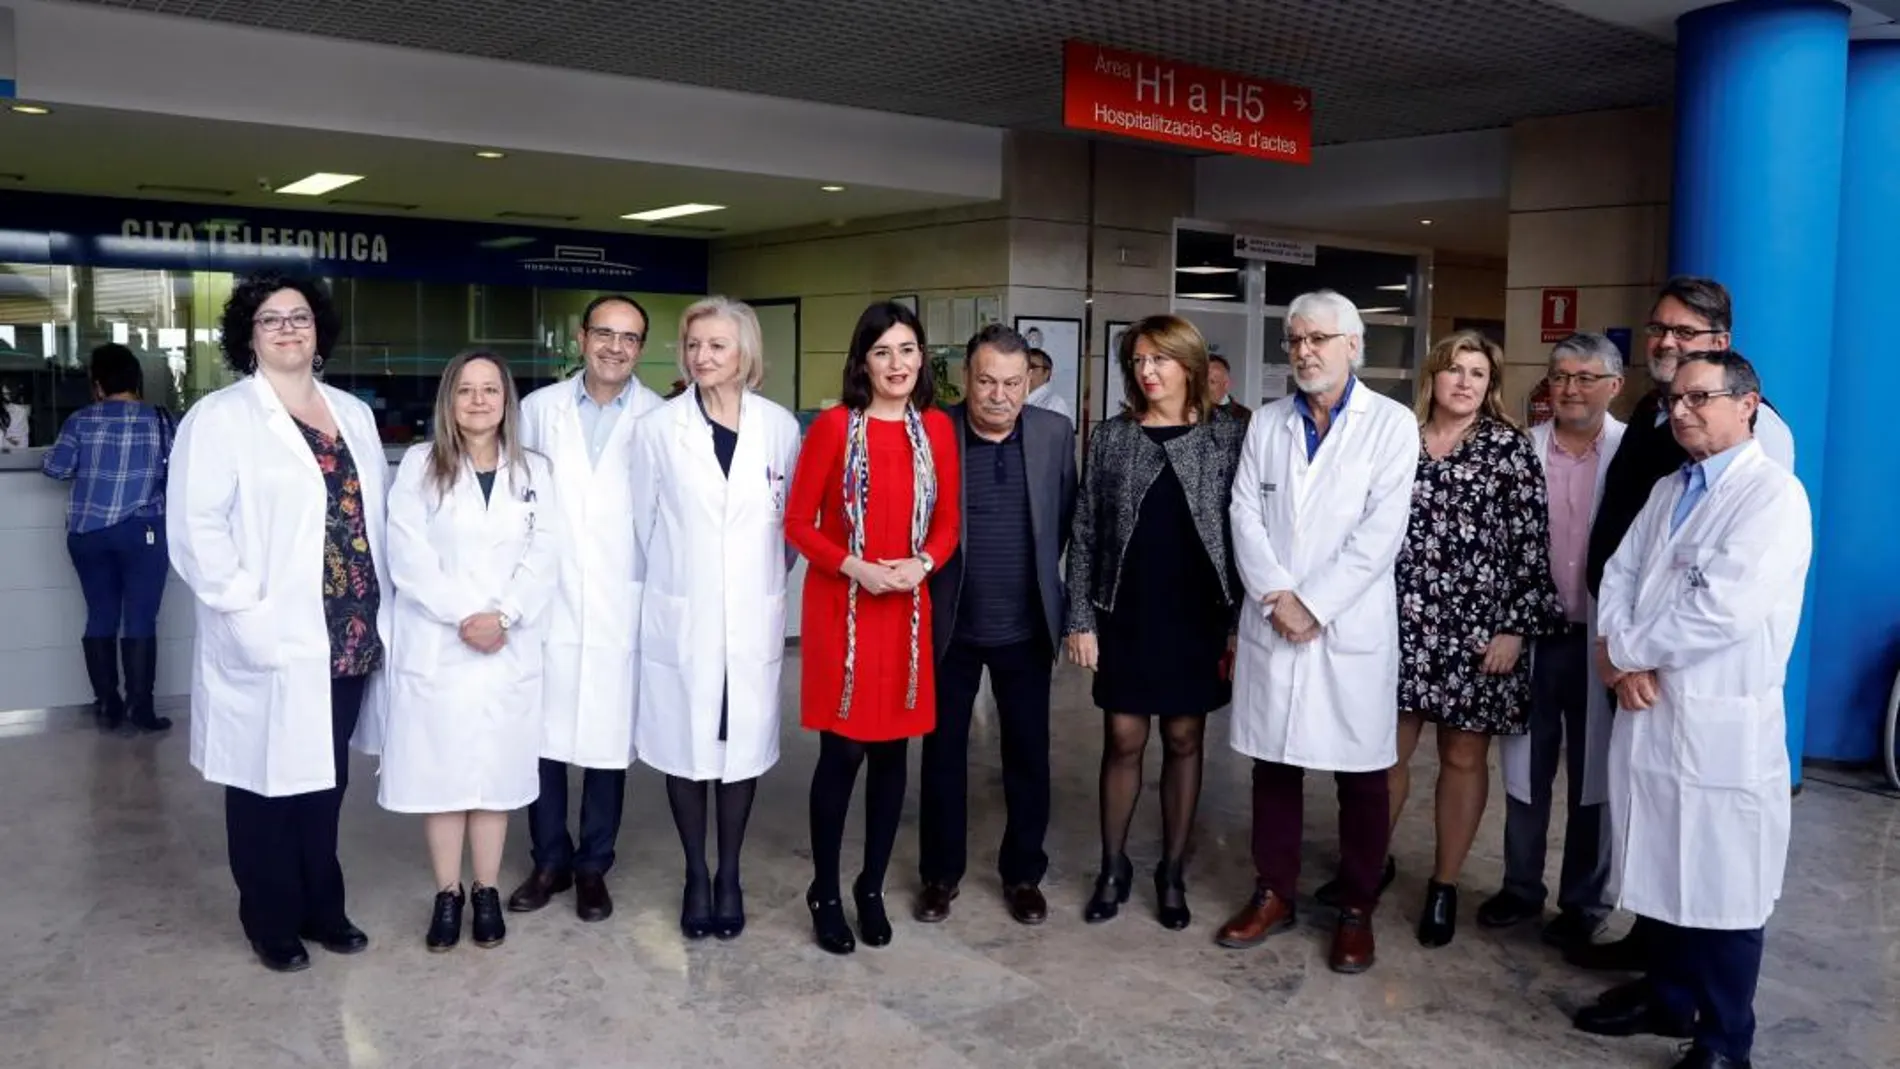 La consellera de Sanitat, Carmen Montón, visitó ayer el hospital de La Ribera en el primer día de la reversión a público del centro. En la imagen, junto al nuevo equipo directivo del centro